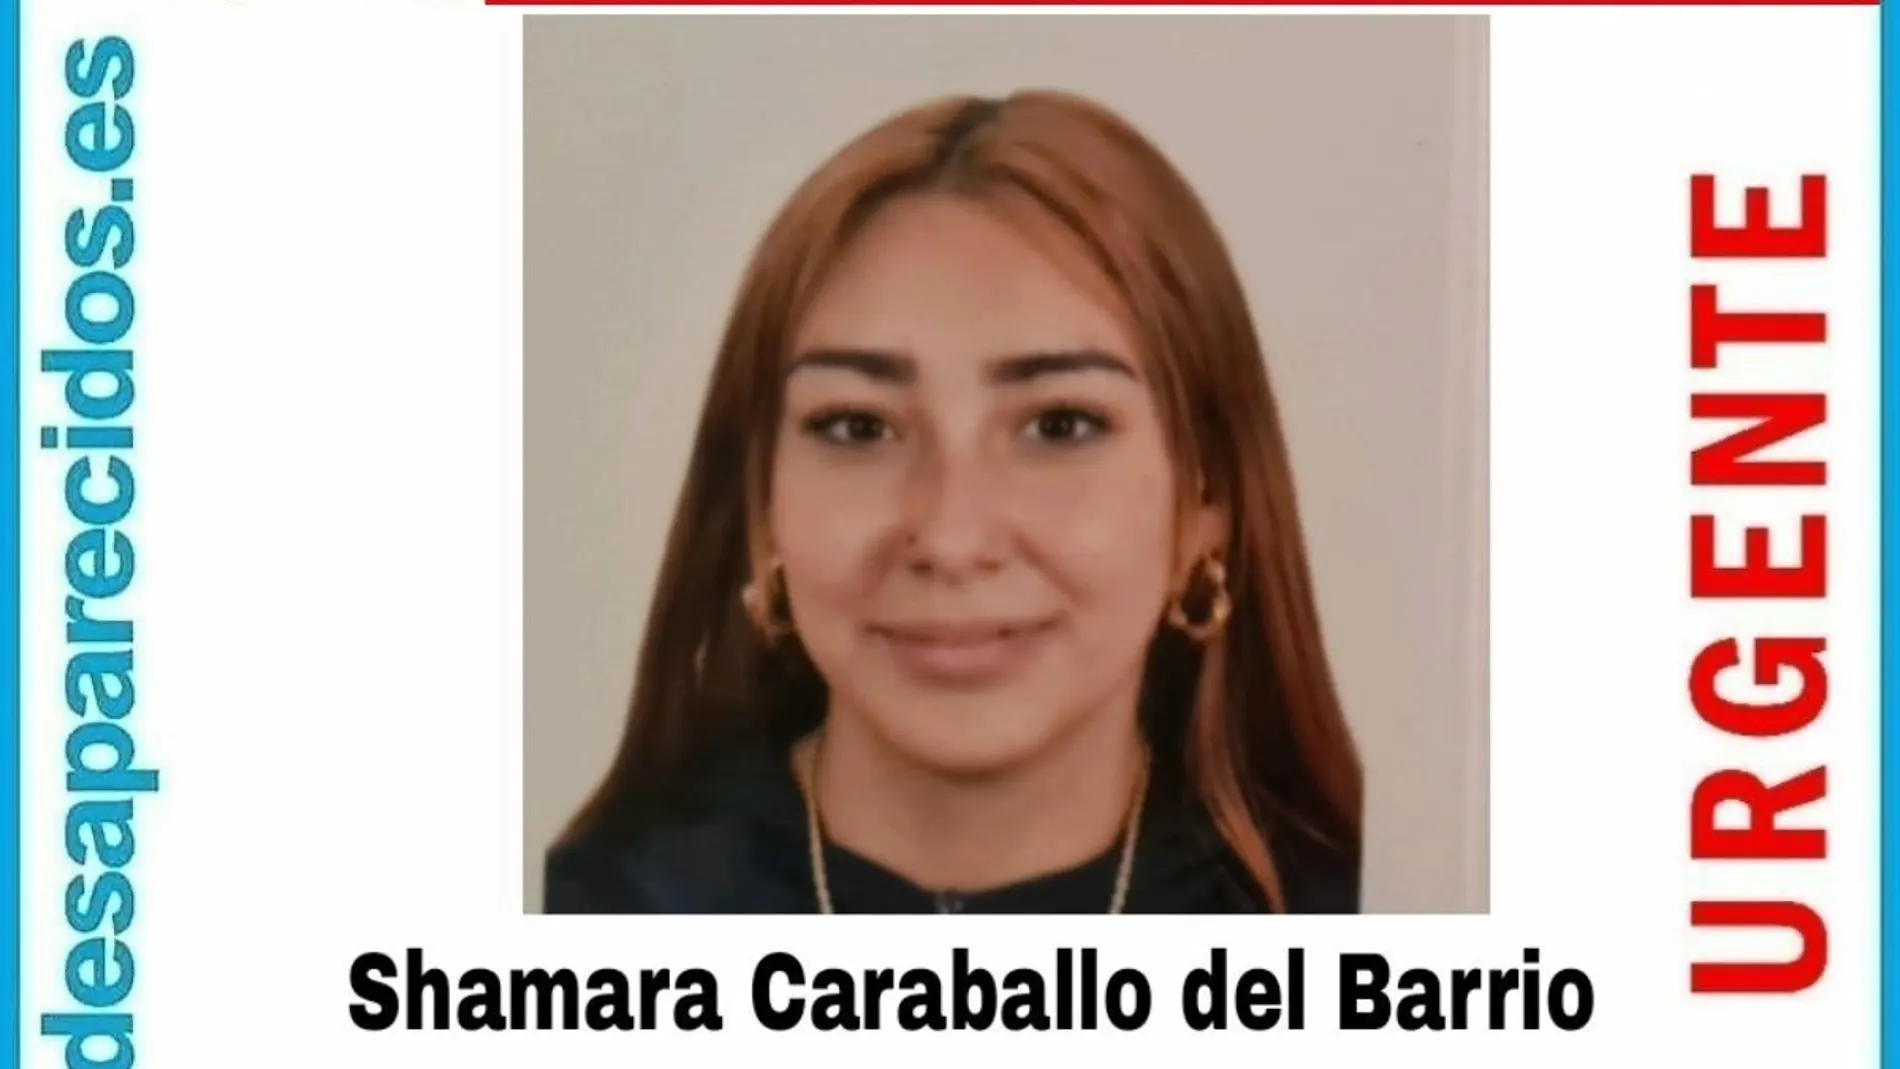 Shamara Caraballo del Barrio, desaparecida